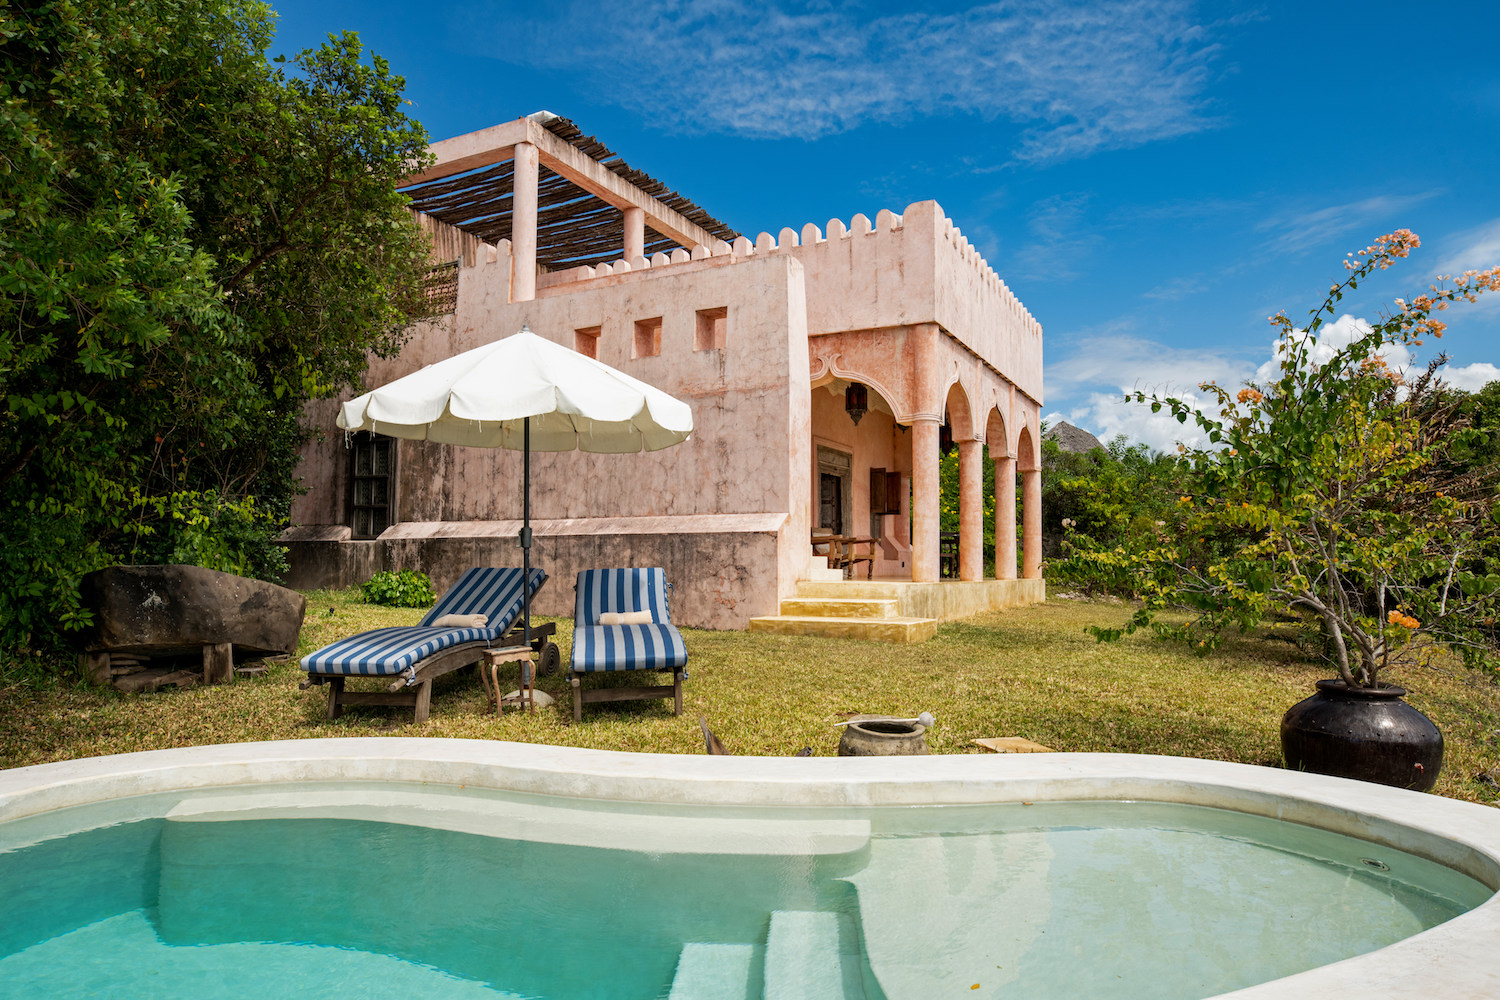 Qambani Luxury Resort Zanzibar Hotel - Sundowner Villa private pool with sunloungers